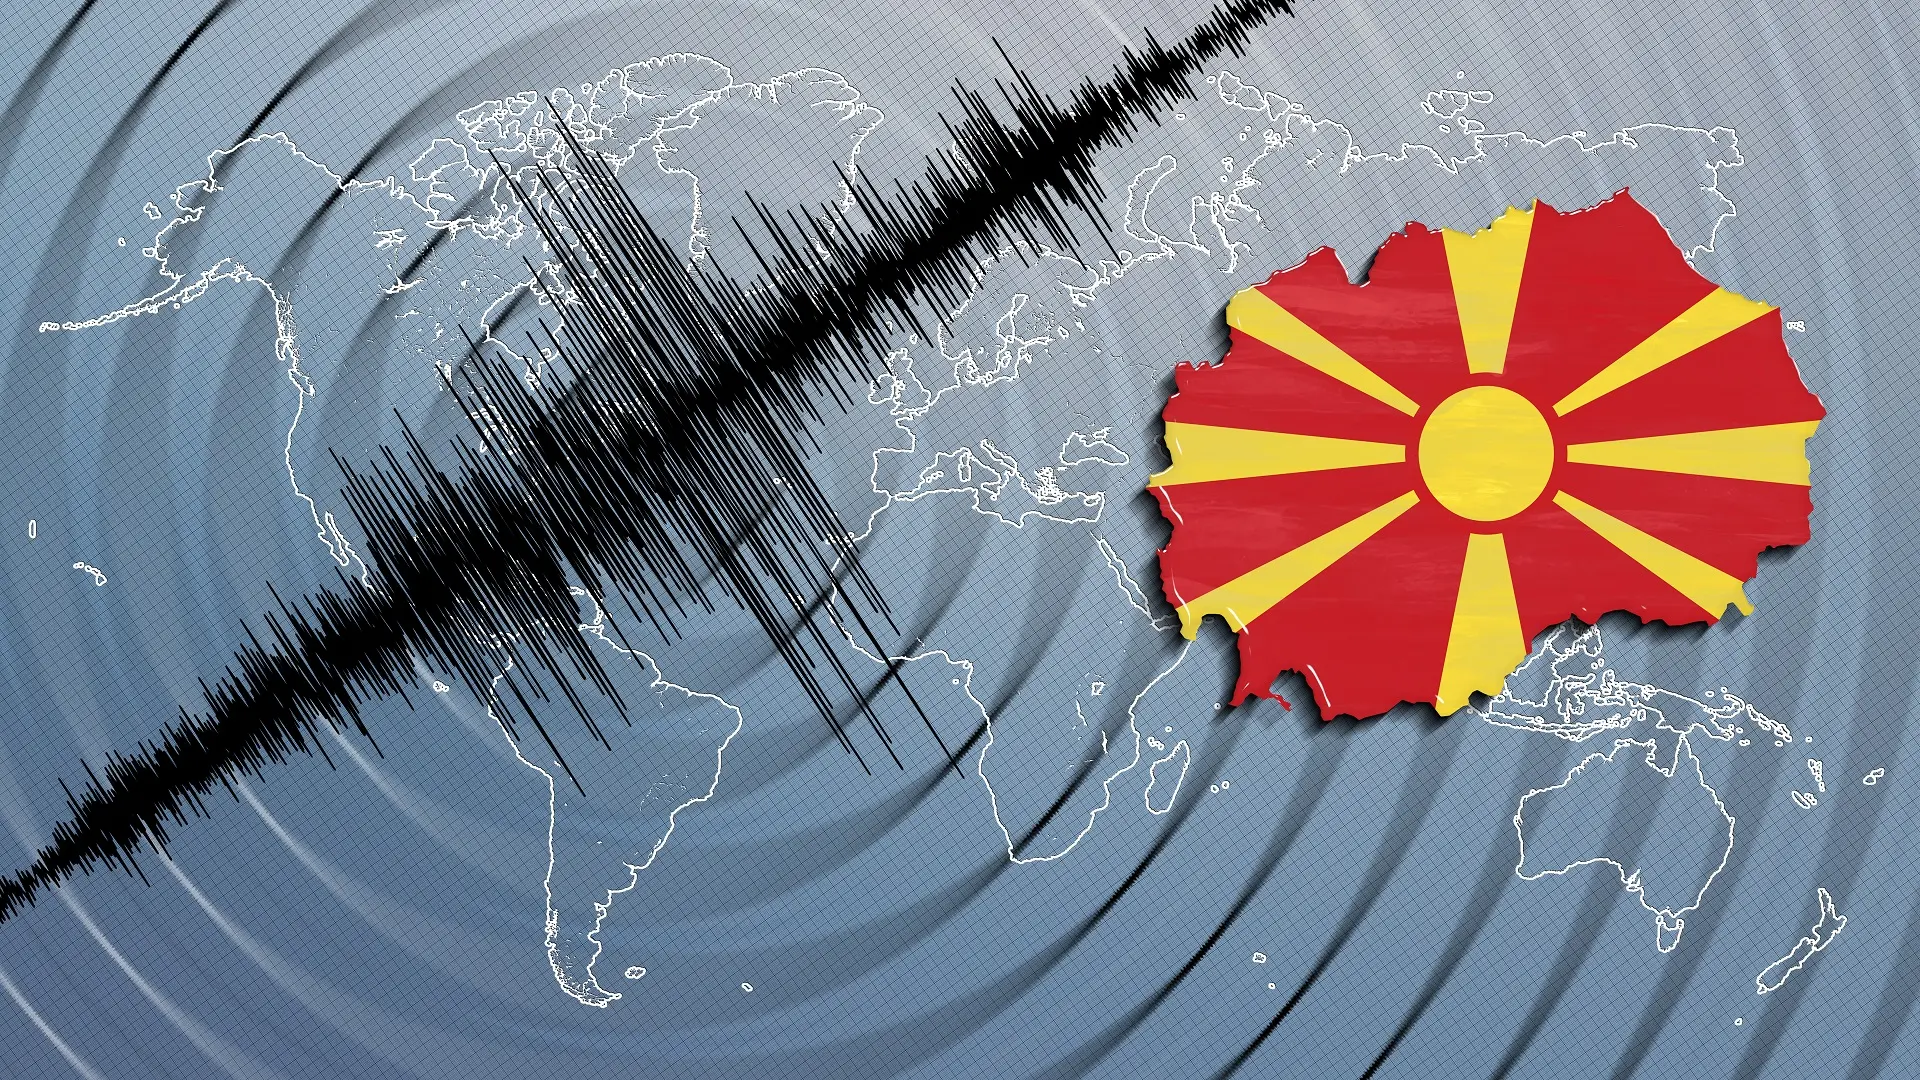 zemljotres u severnoj makedoniji, severna makedonija - shutterstock-668a92033e4b9.webp